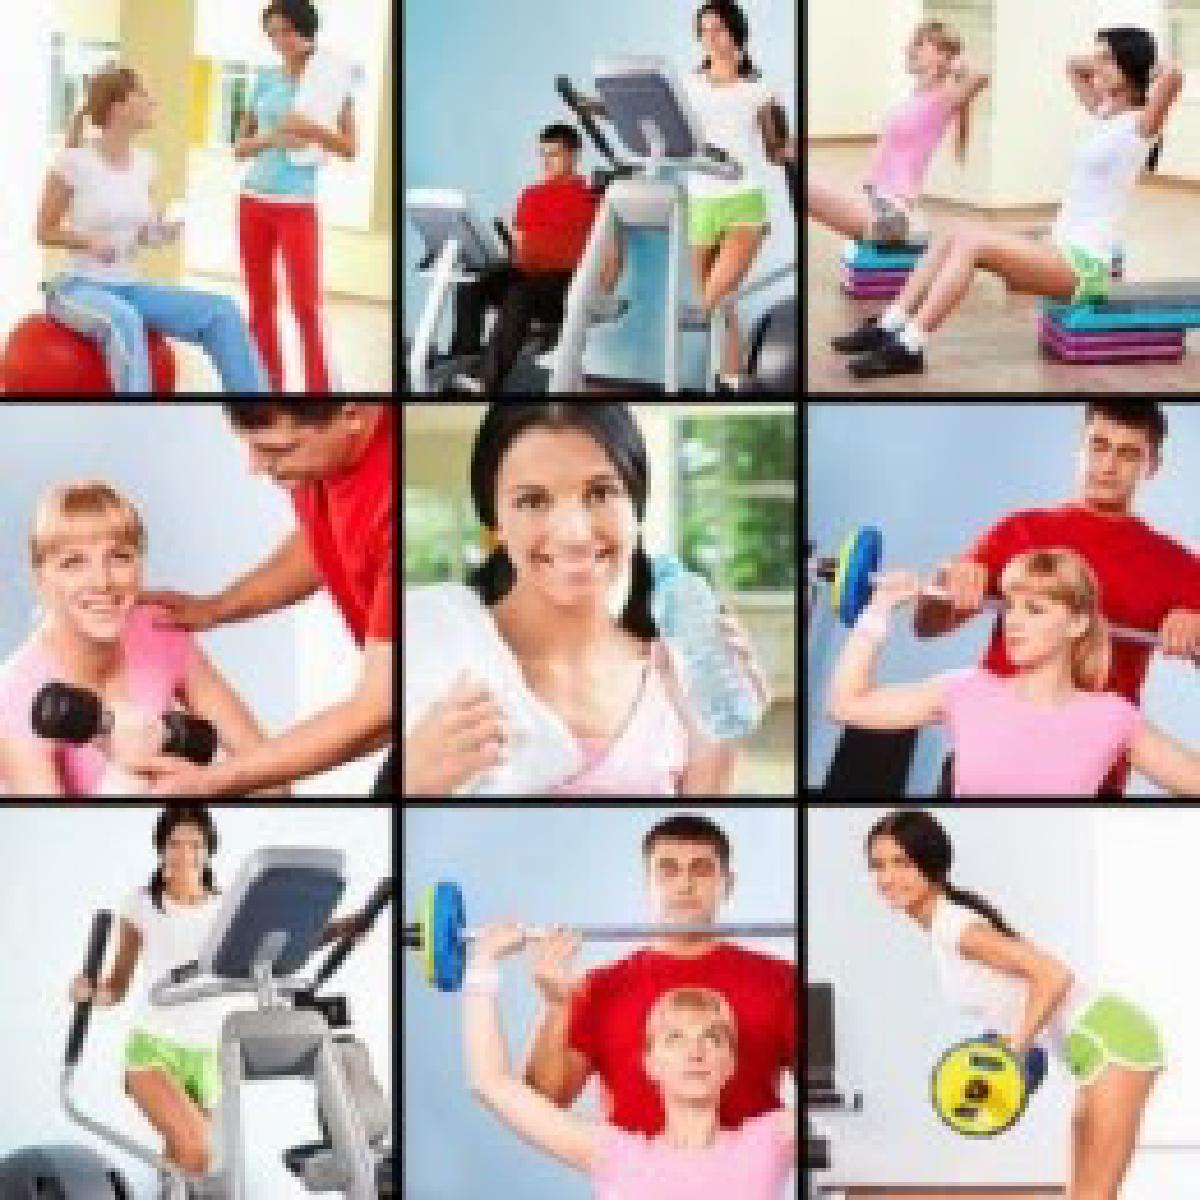 Διάφορα είδη άσκησης και γυμναστικής